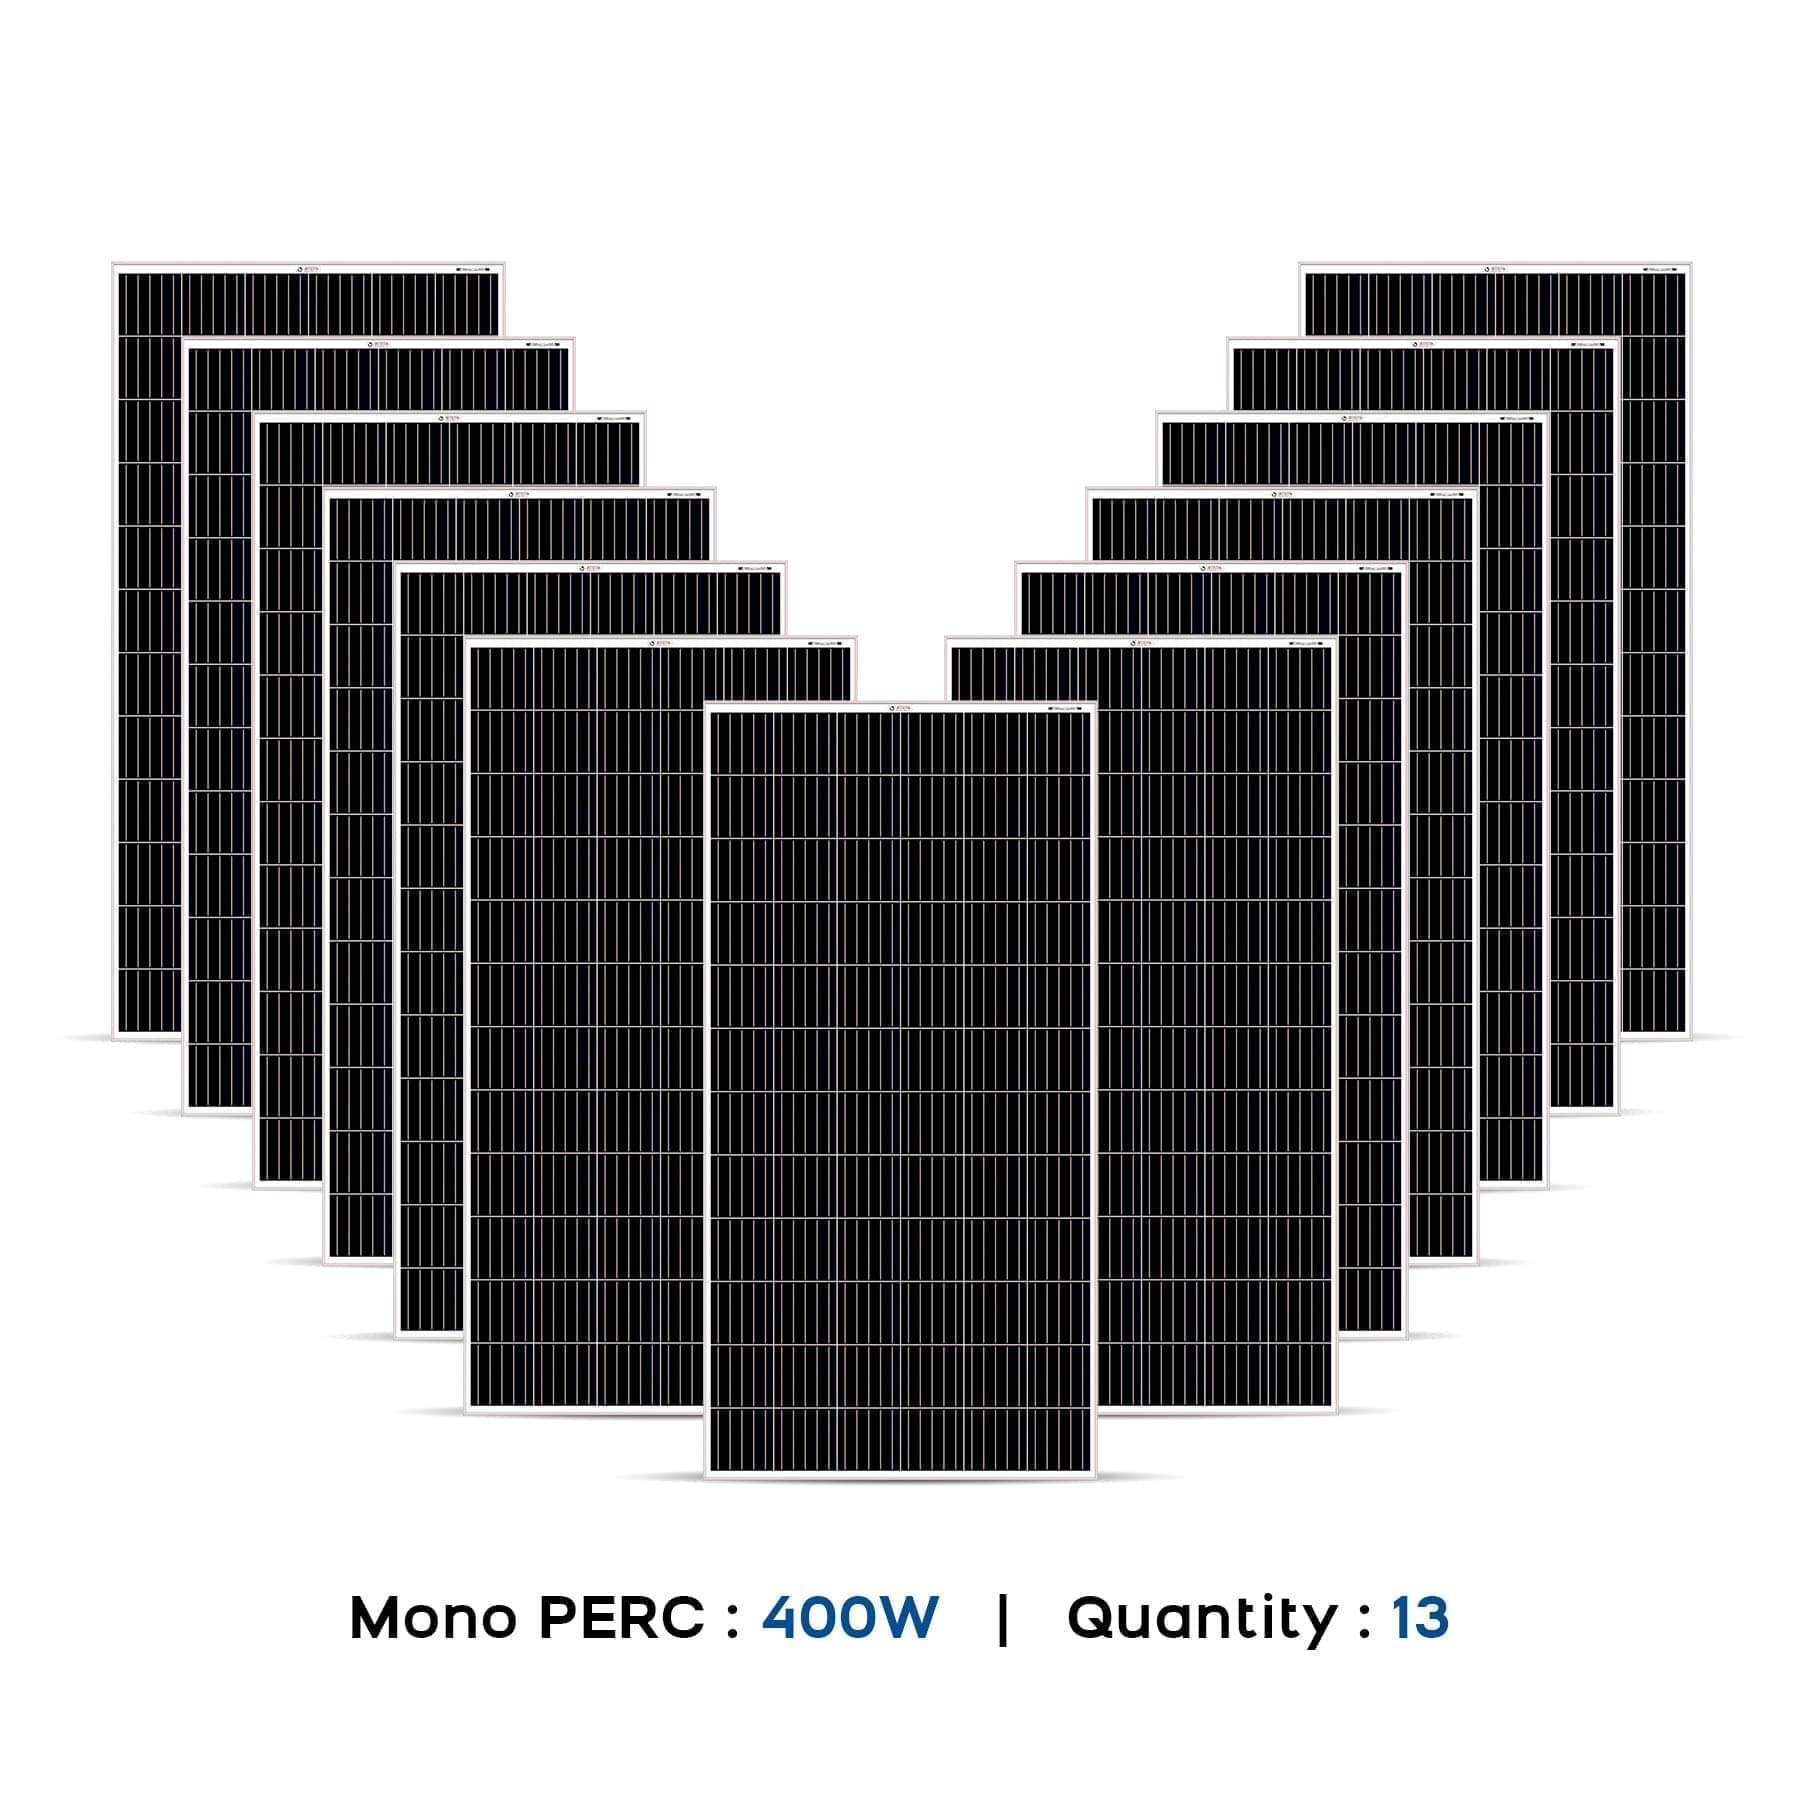 5 kw solar panel